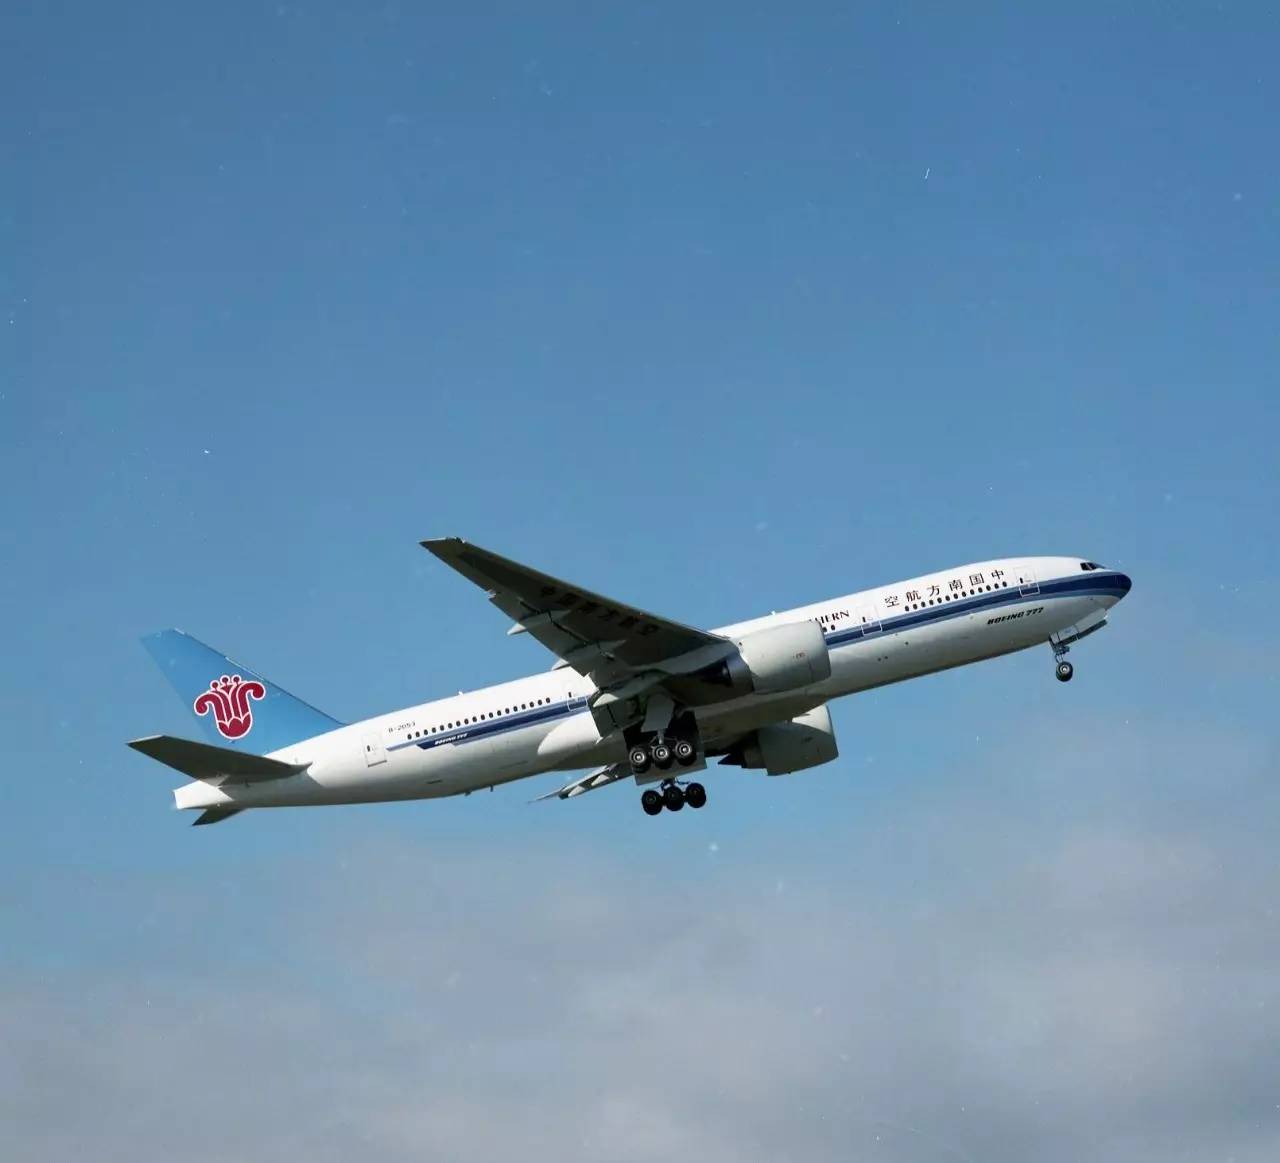 [原创]中国南方航空B777-200ER越太平洋延程飞行